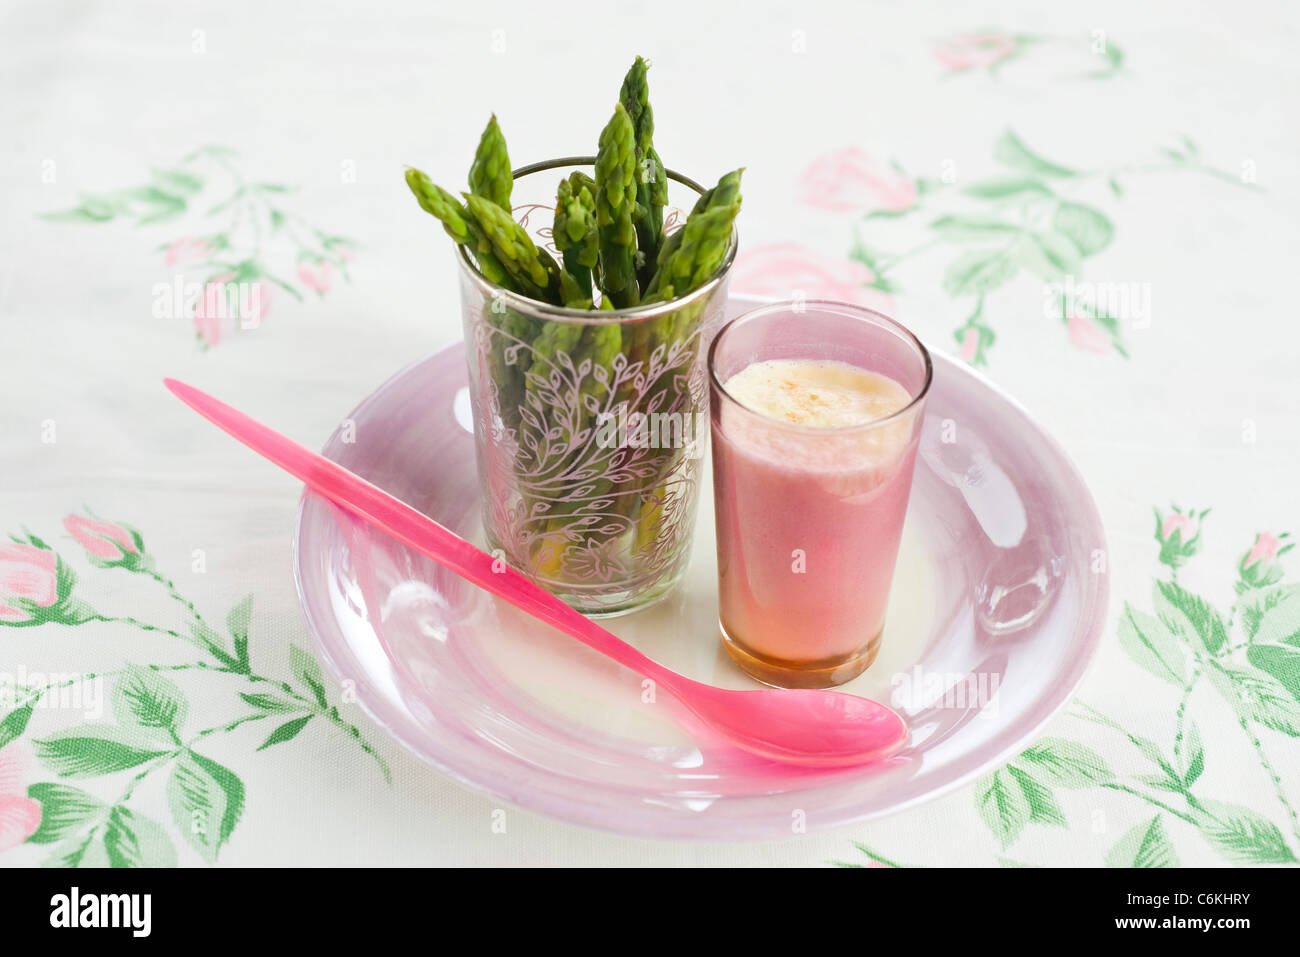 Asparagus with citrus mayonnaise Stock Photo